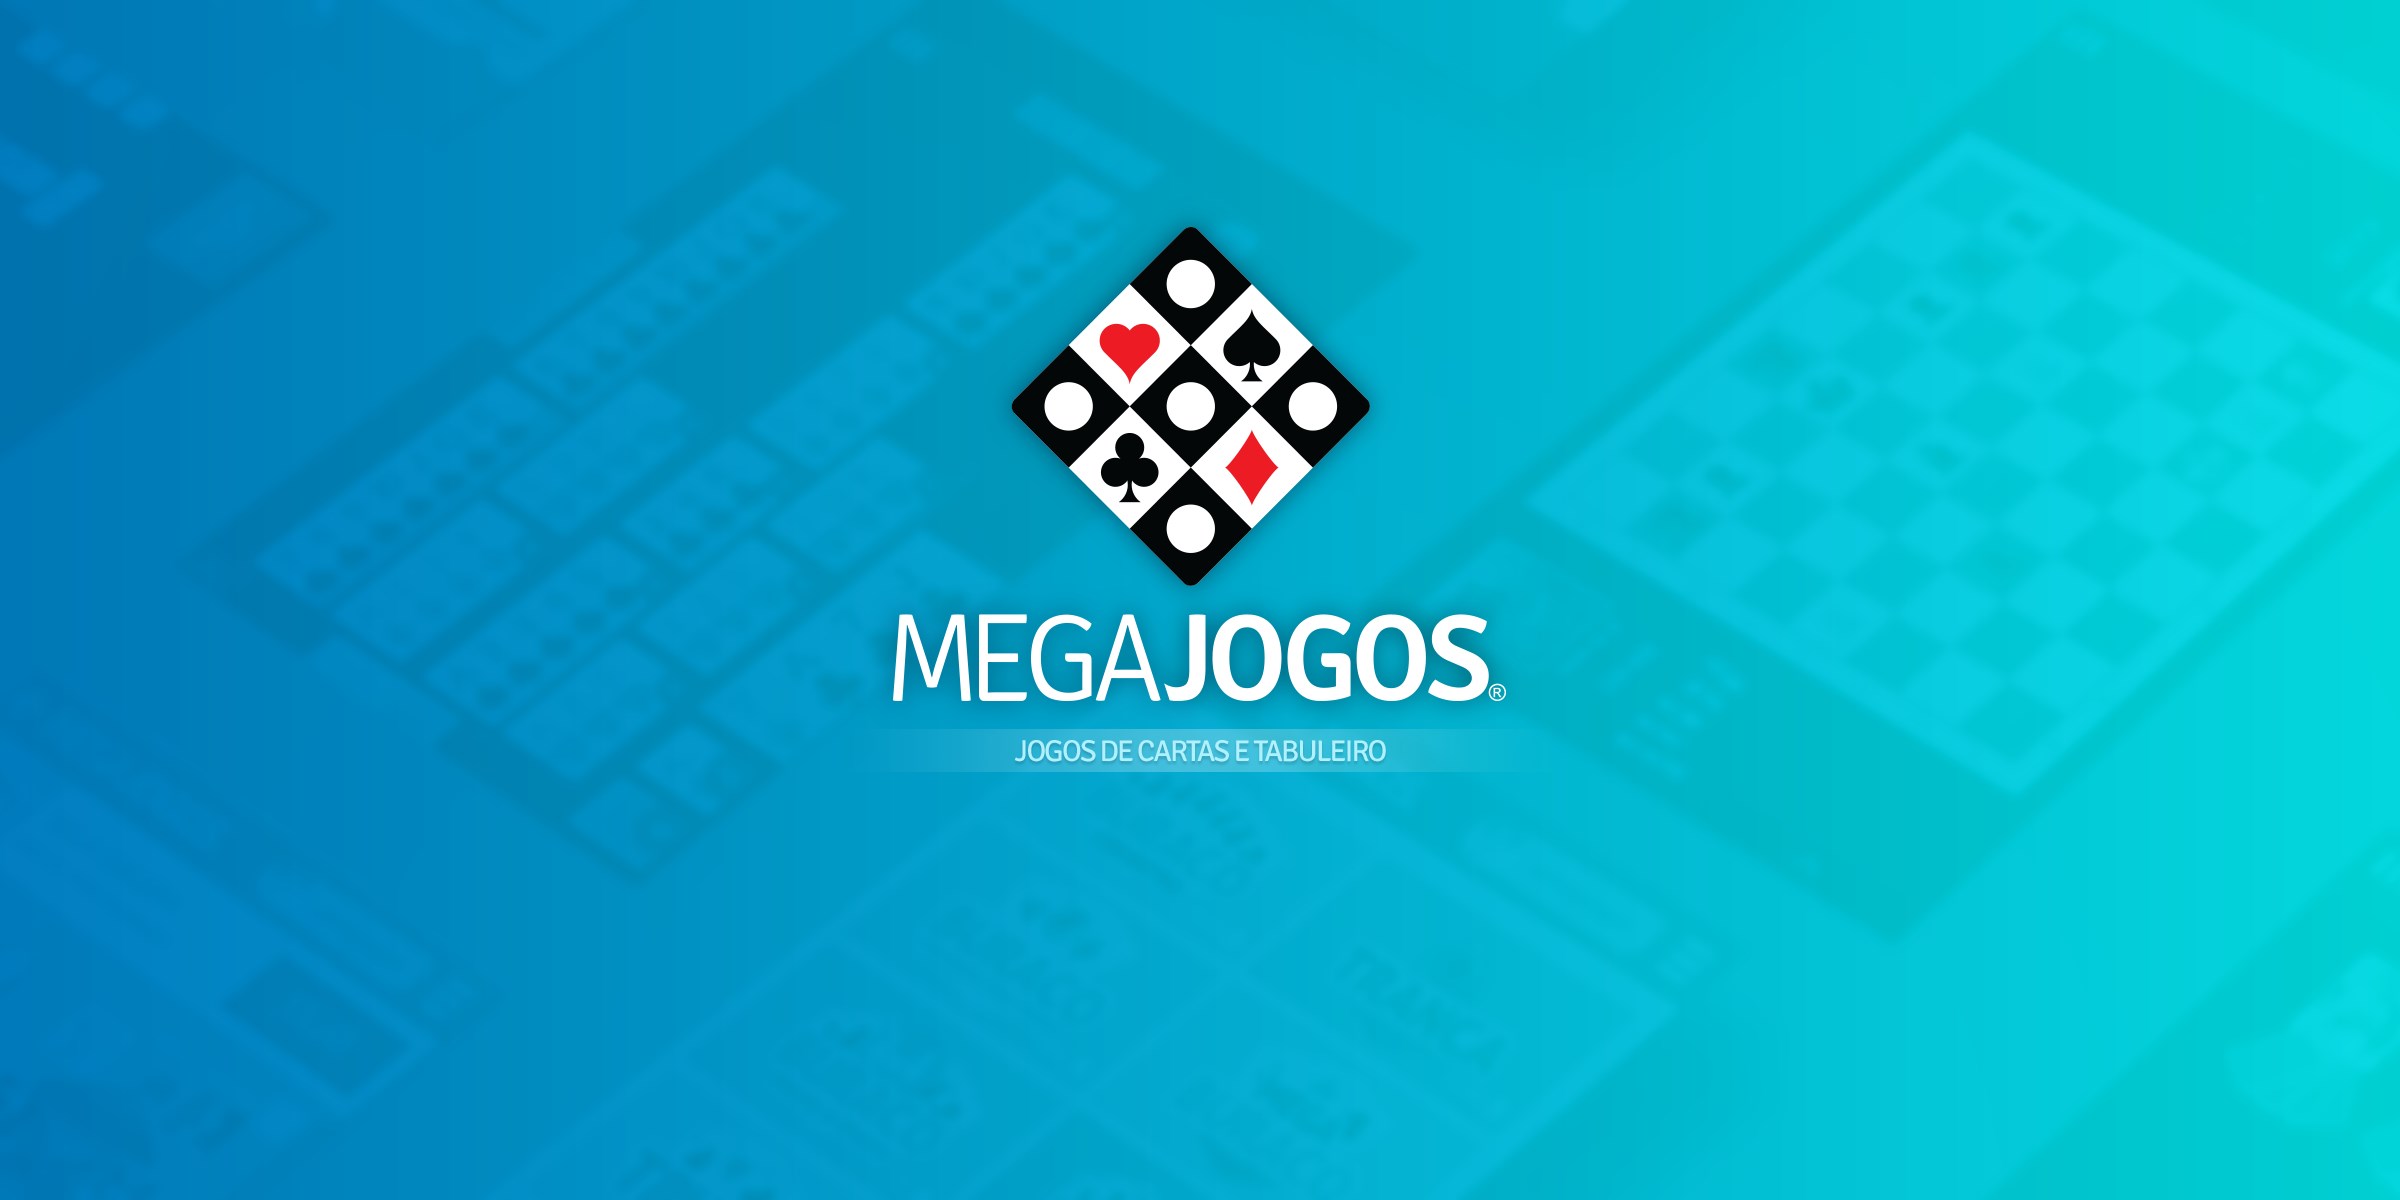 Jogos de Cartas by Megajogos Entretenimento Ltda